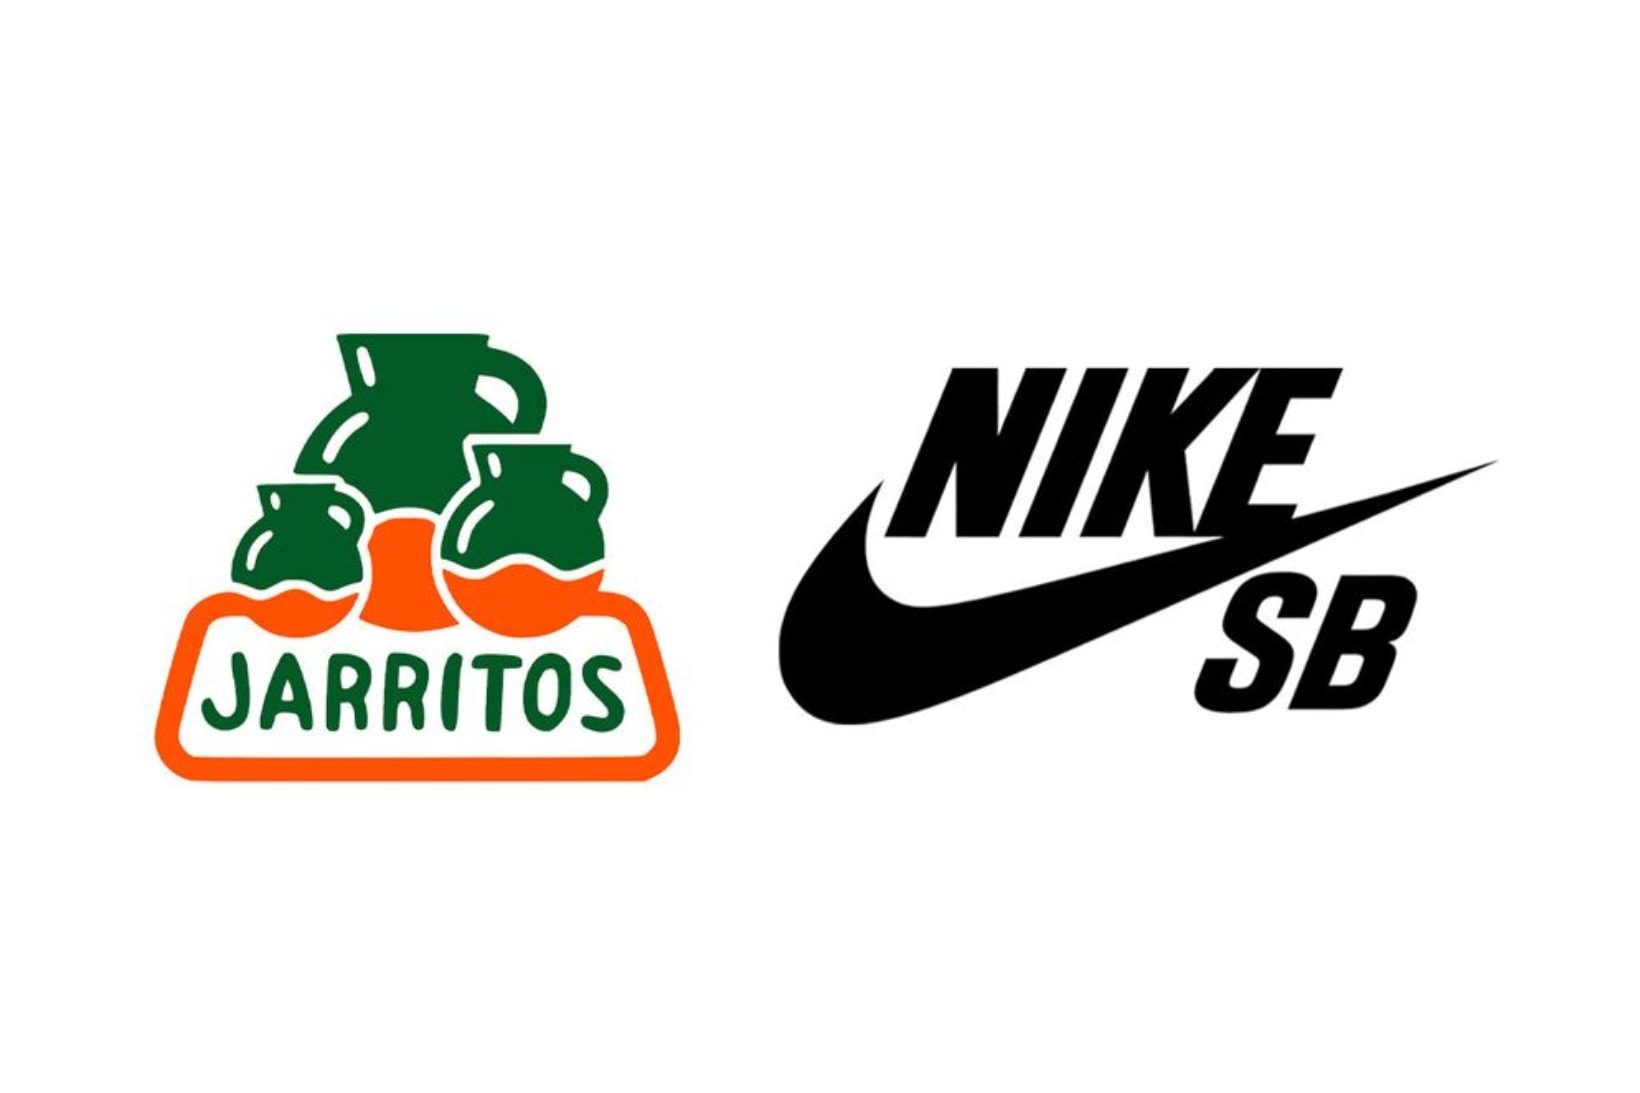 Jarritos x Nike SB Dunk Low Collab Rumors Surfaces Online